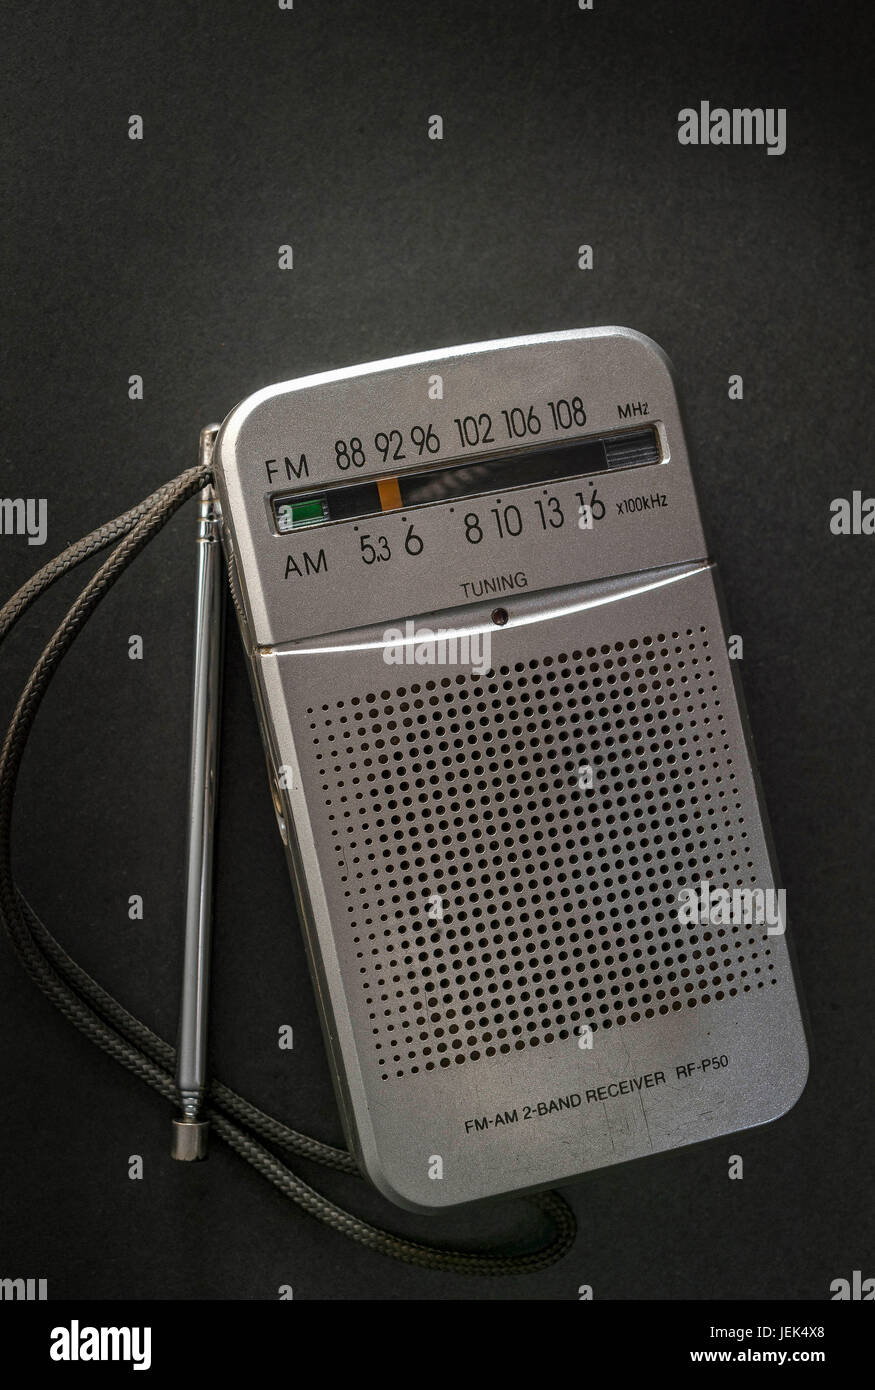 Vintage FM am radio portable, india, asia Stock Photo